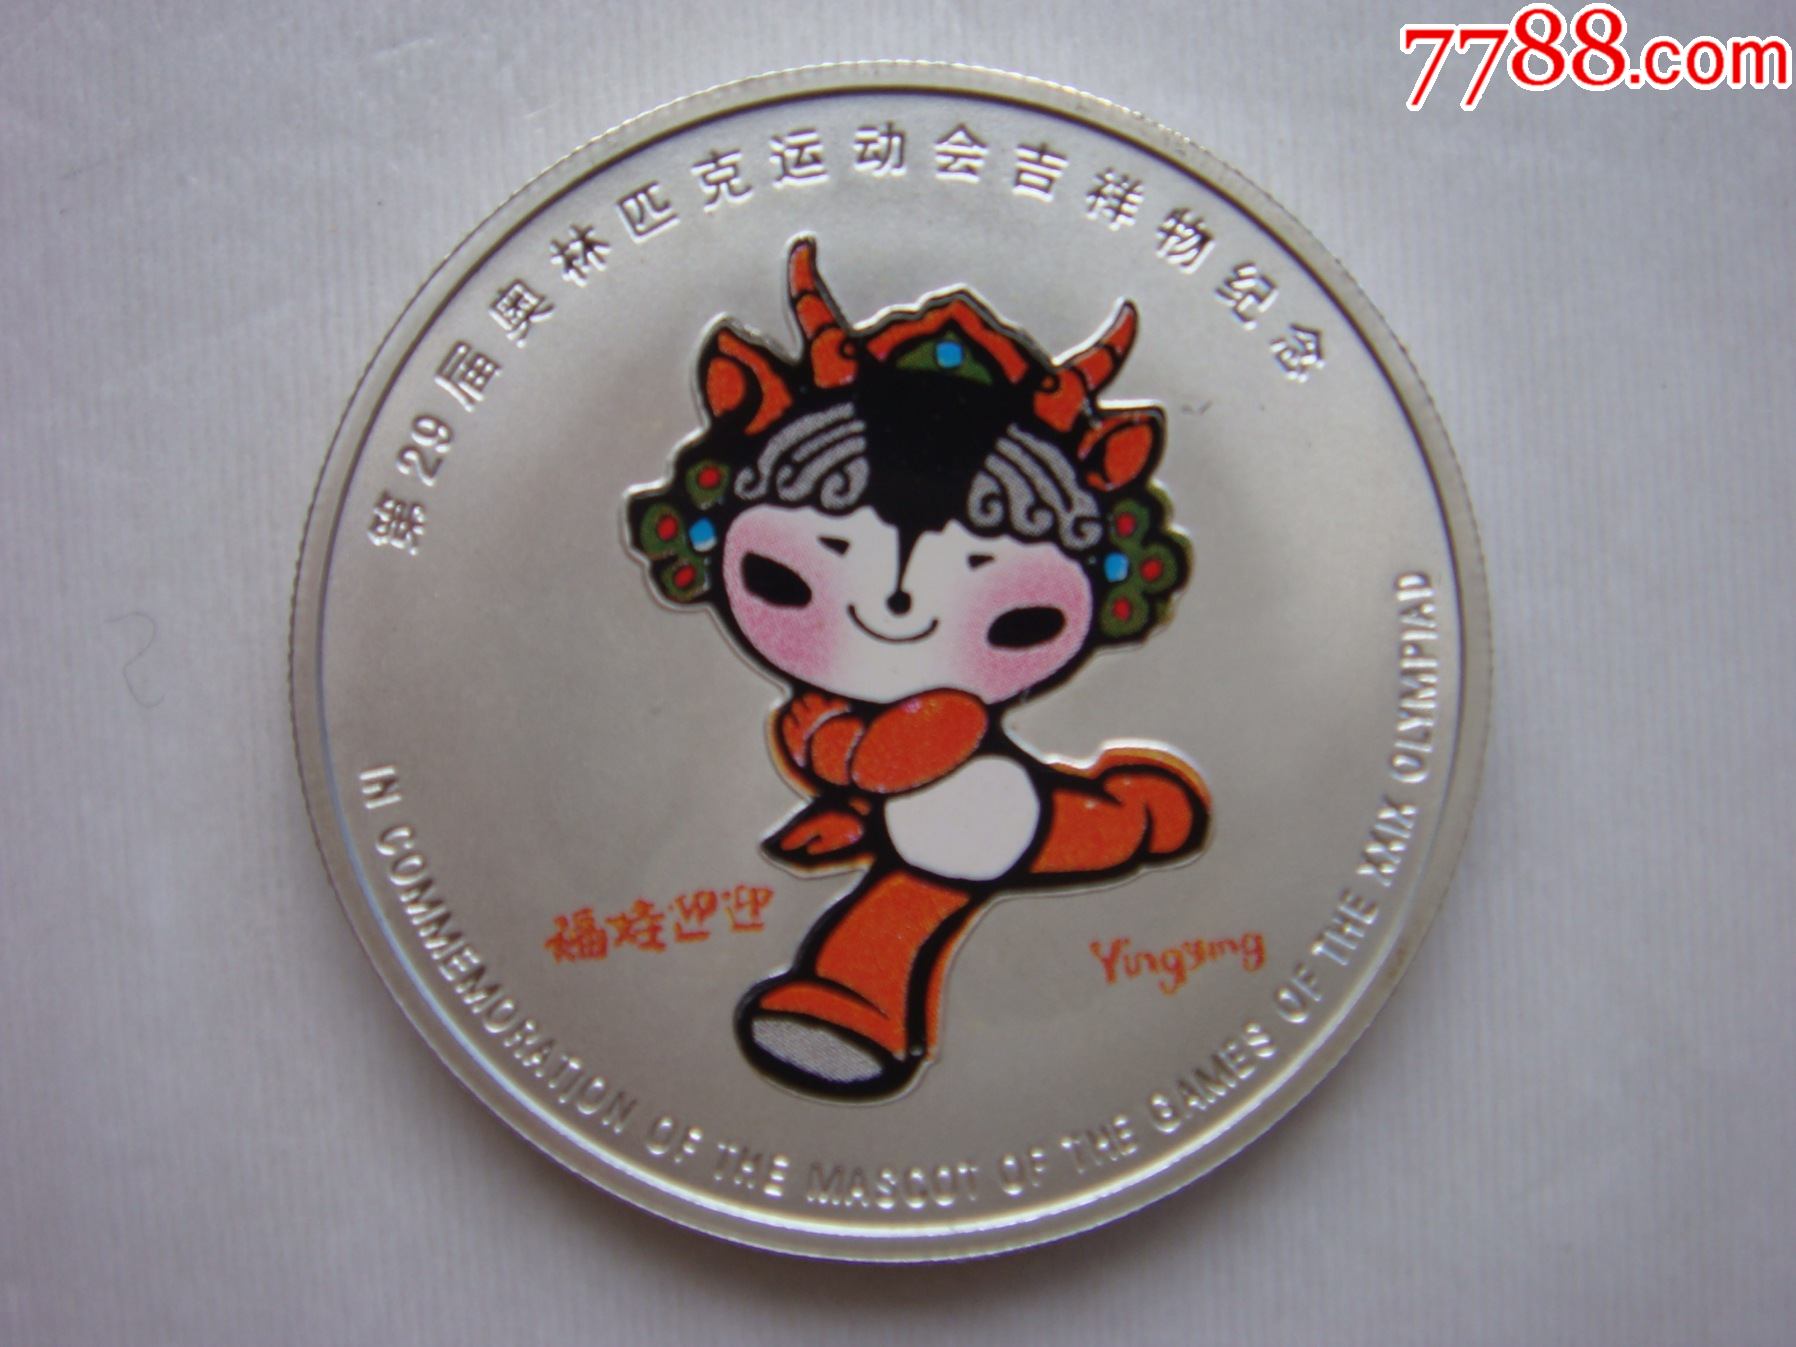 第29届奥林匹克运动会吉祥物纪念币【彩色】--5枚一套_金银纪念币_第